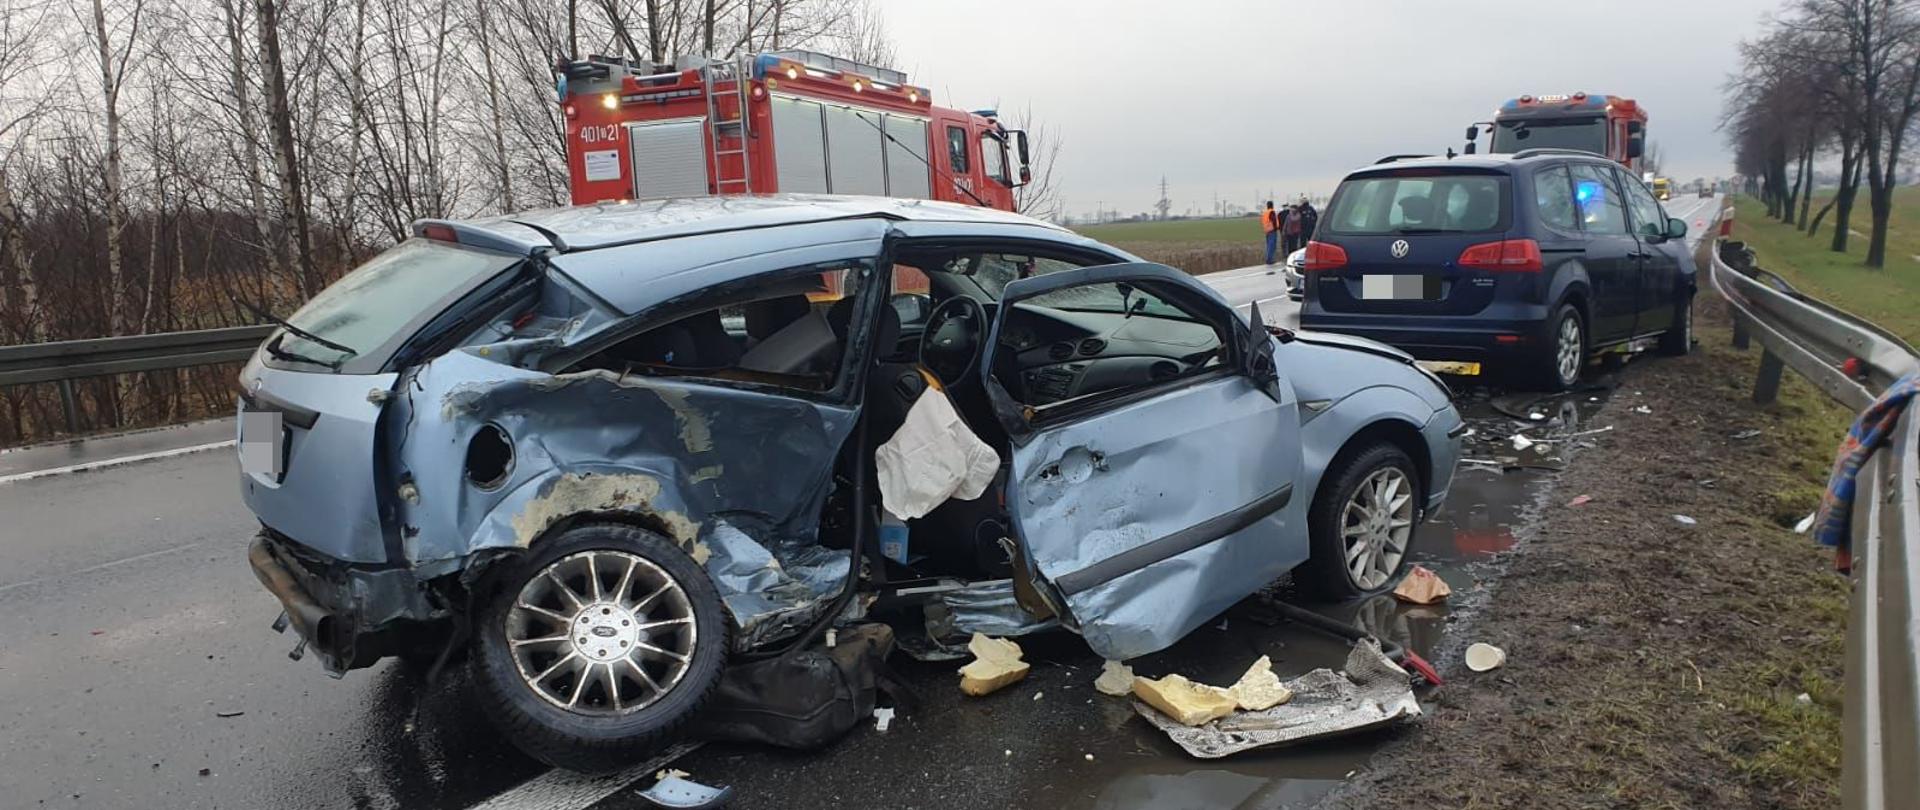 Zdjęcie przedstawia rozbite samochody po wypadku na drodze krajowej nr 94 niedaleko miejscowości Skarbimierz powiat brzeski. Na zdjęciu widoczny samochód pożarniczy.